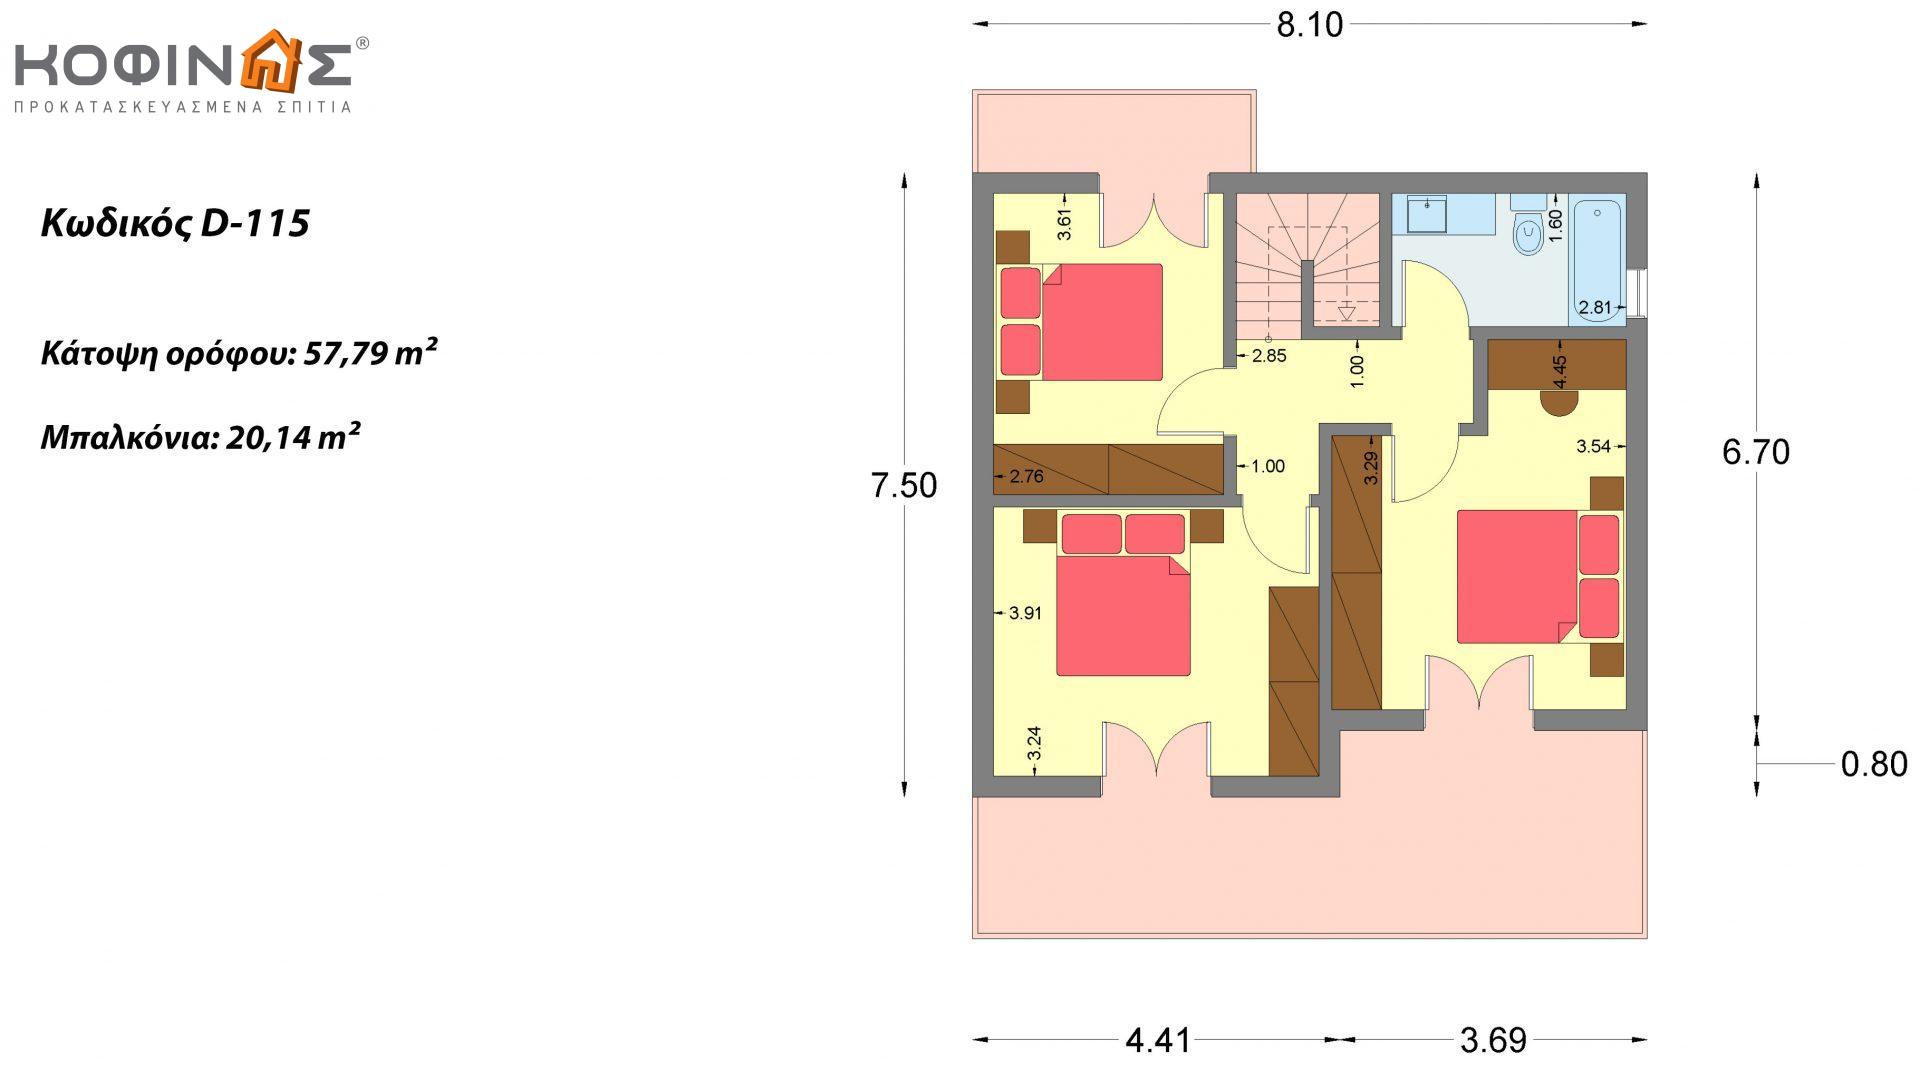 Διώροφη κατοικία D-115, συνολικής επιφάνειας 115,58, συνολική επιφάνεια στεγασμένων χώρων 24,33 τ.μ., μπαλκόνια 20,14 τ.μ.